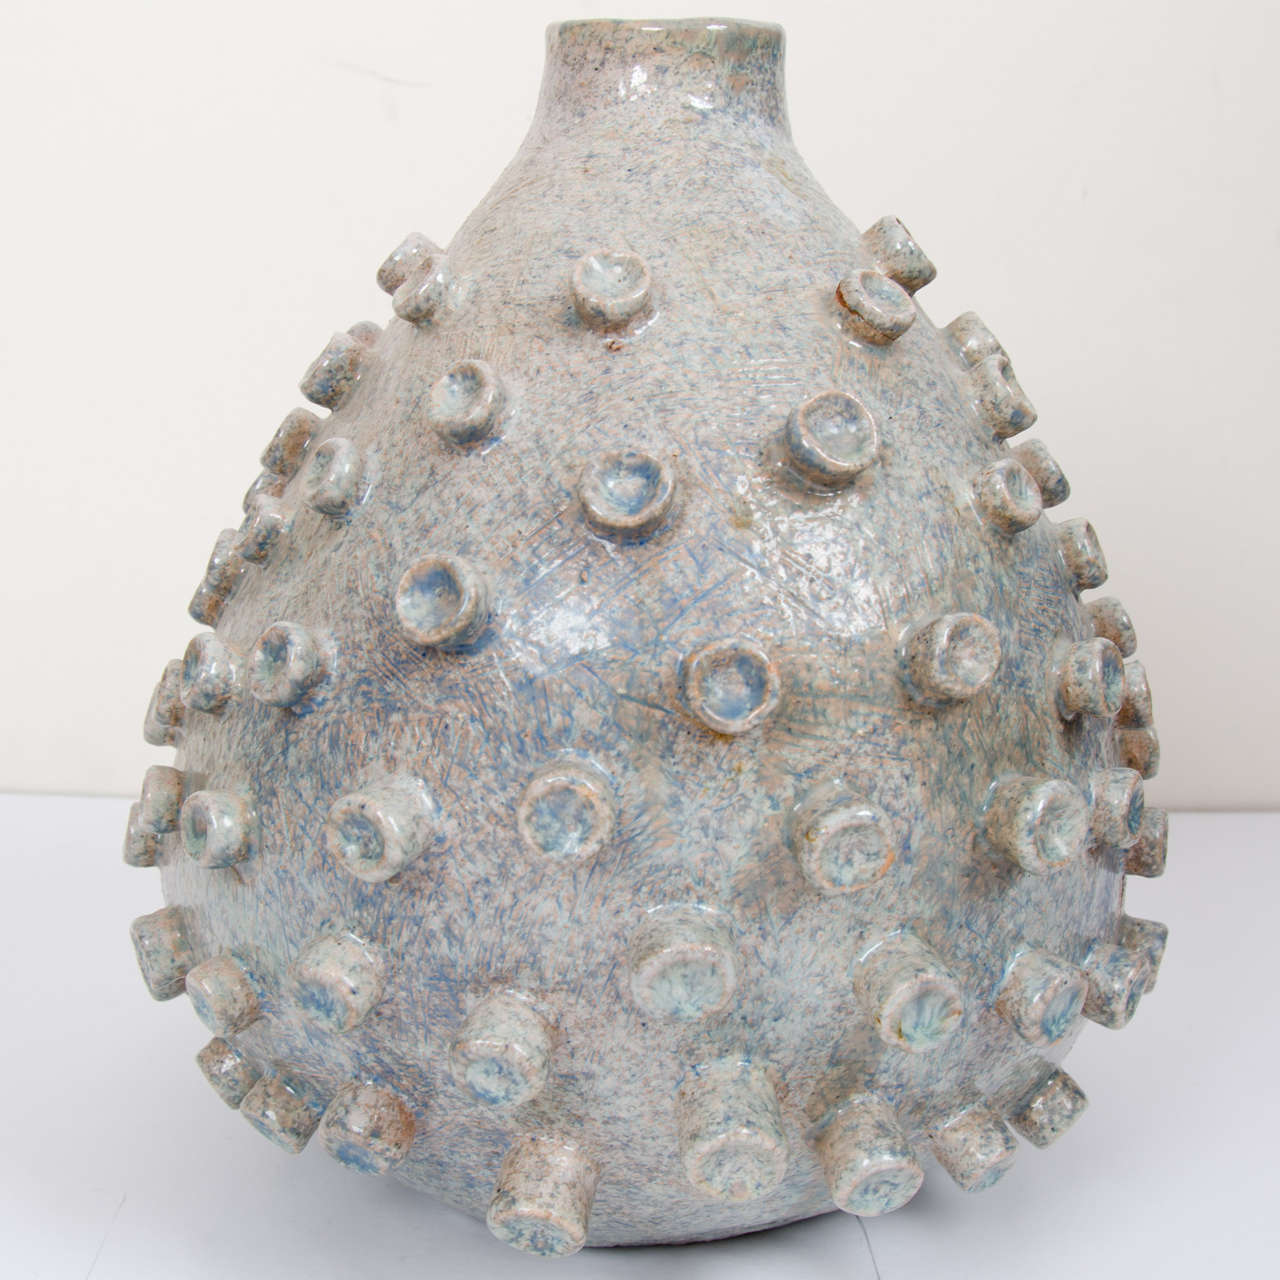 Biomorphic Ceramic Vessel 4